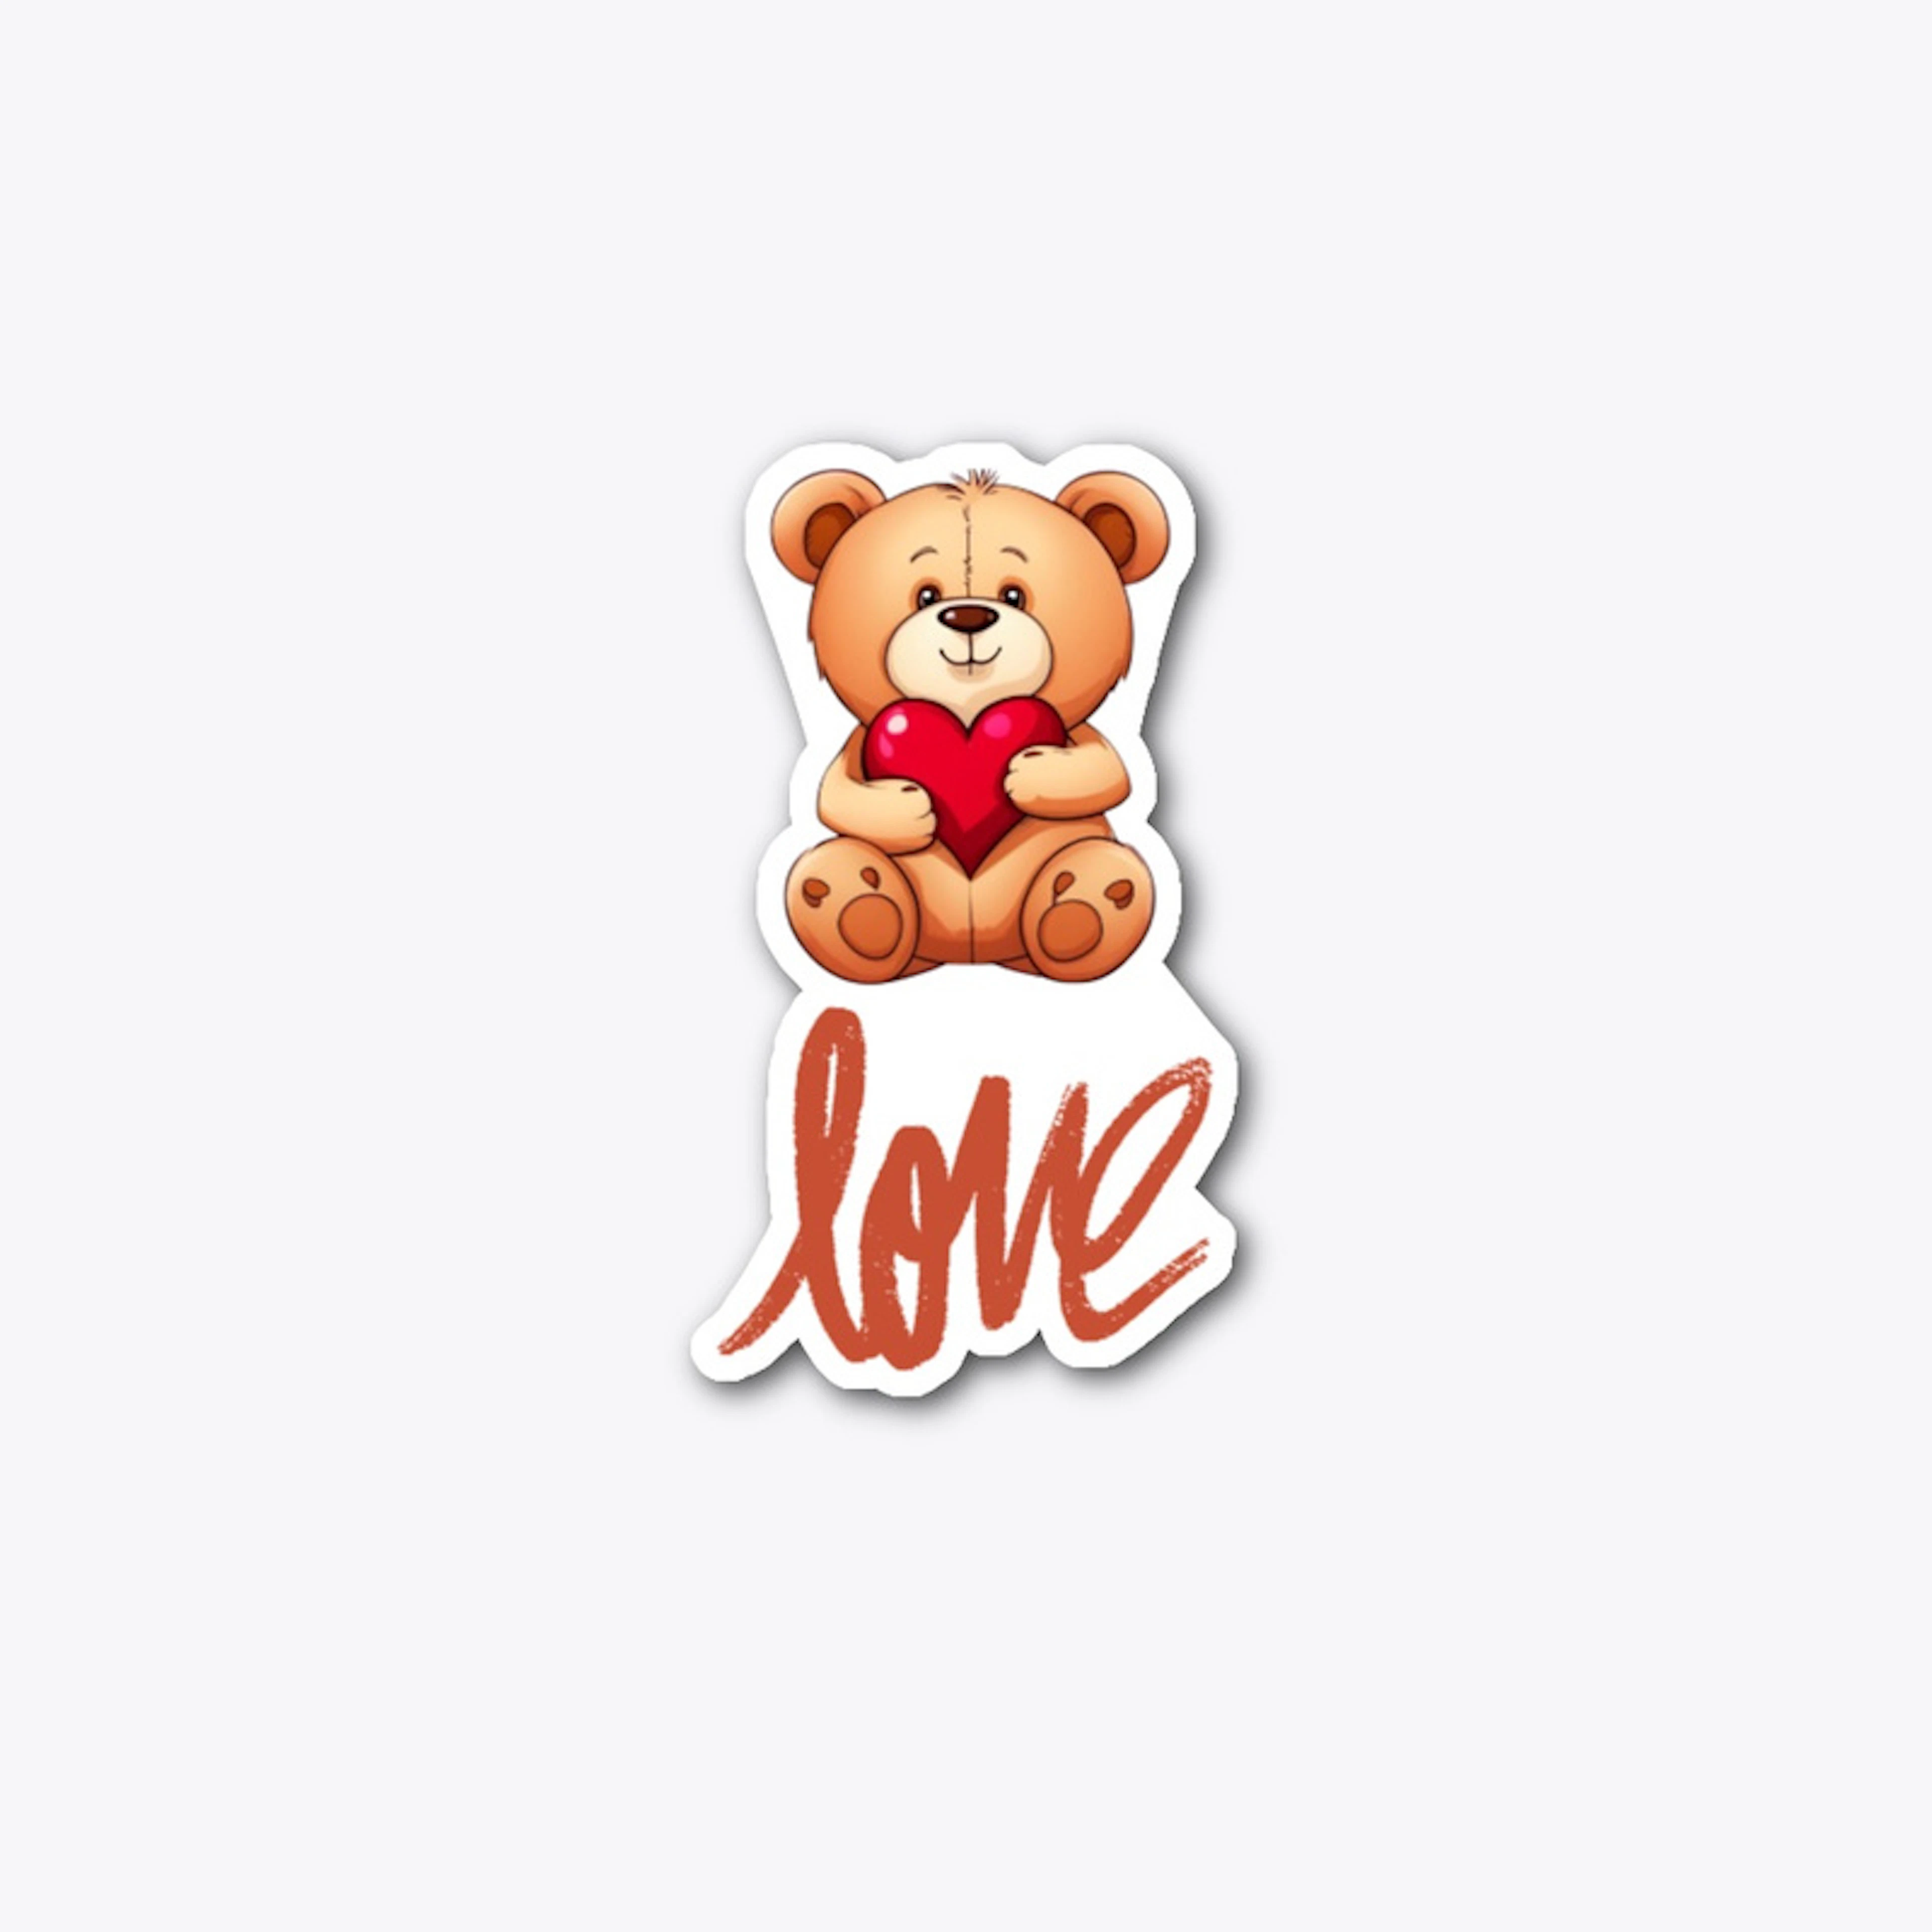 Teddy bear holding a heart.